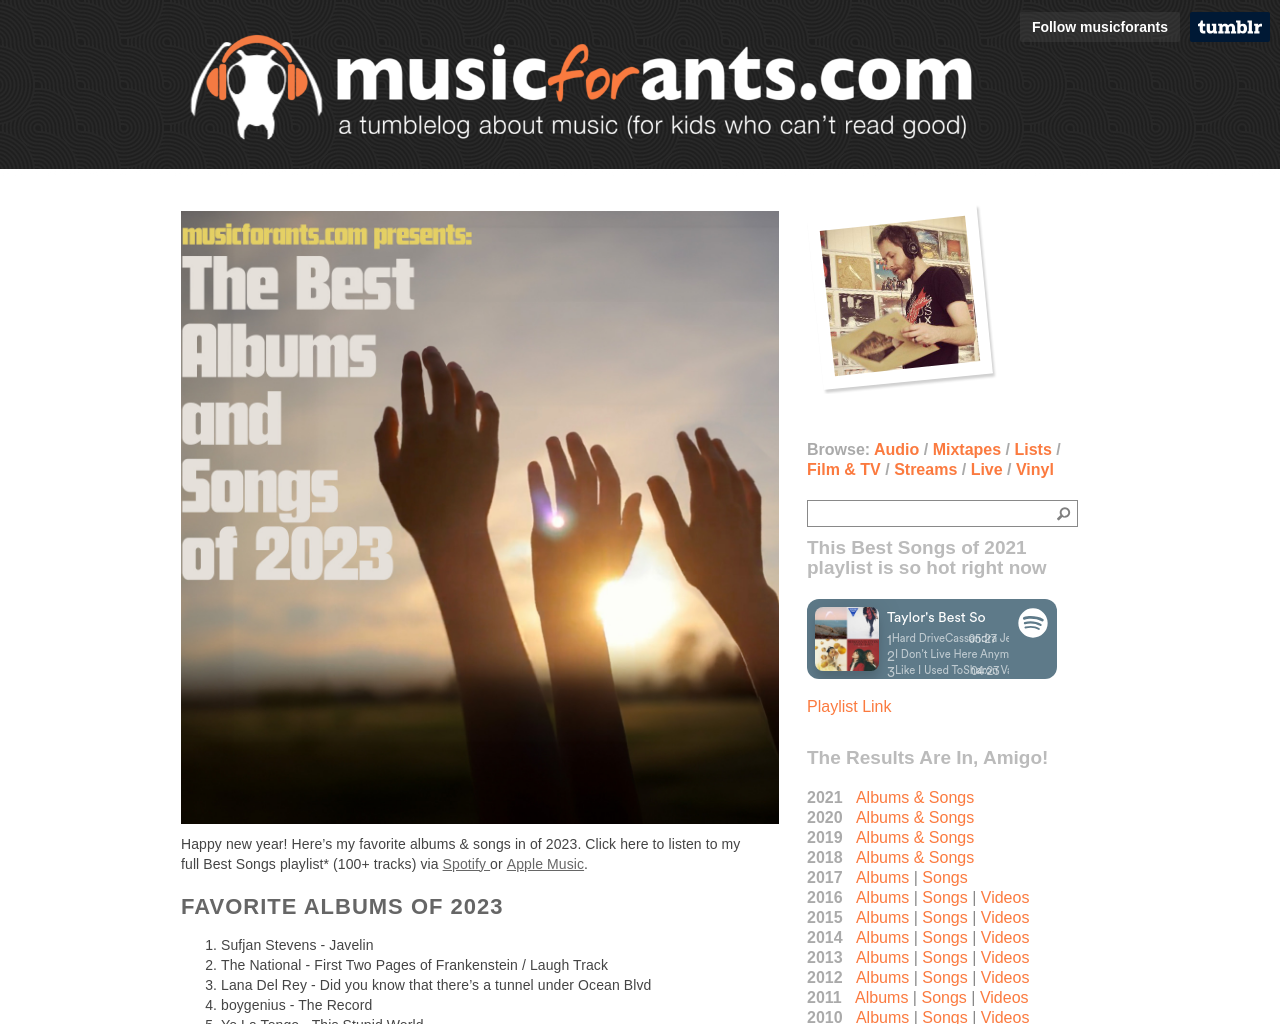 musicforants.com